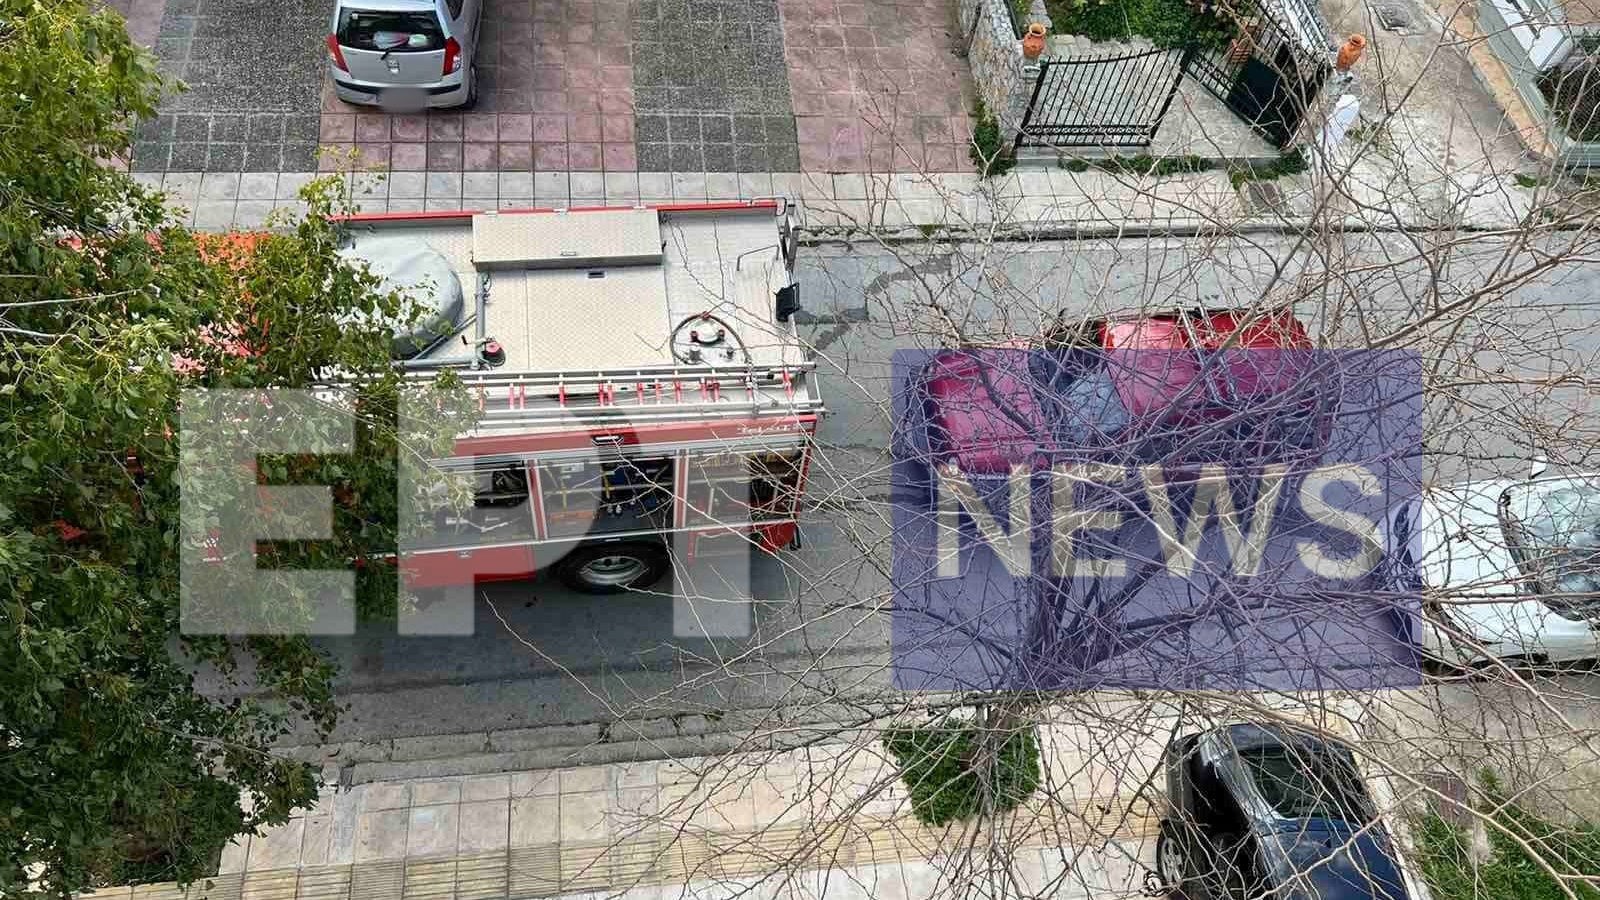 Απανθρακωμένη γυναίκα εντοπίστηκε μετά από πυρκαγιά σε διαμέρισμα στα Χανιά